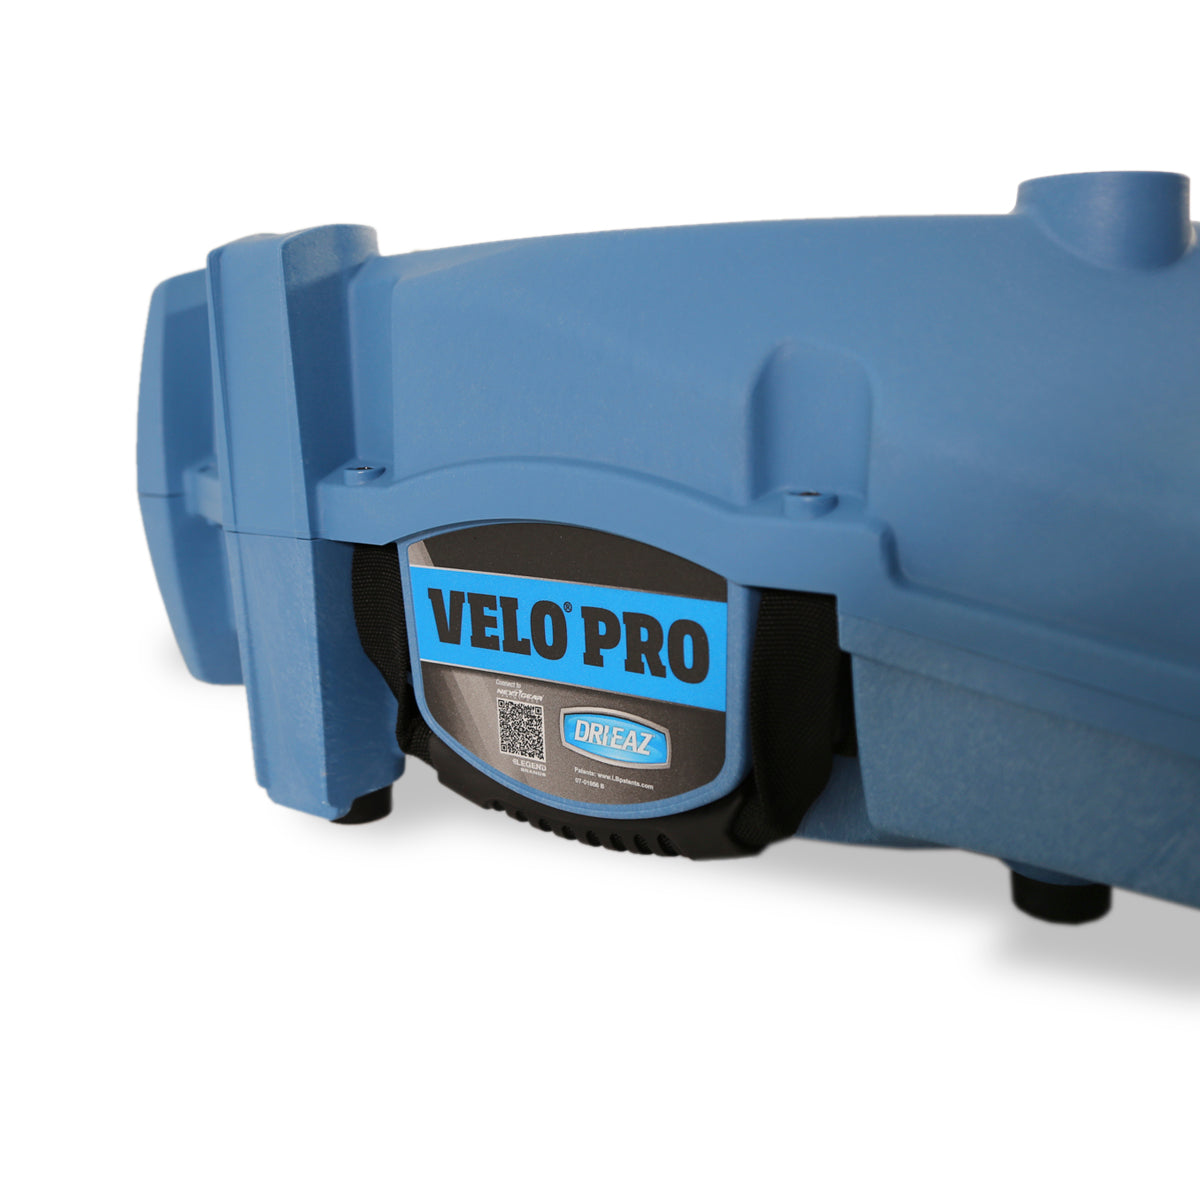 Ventilateur professionnel compact Dri-Eaz Velo Air Mover F504 multiposition à vitesse variable